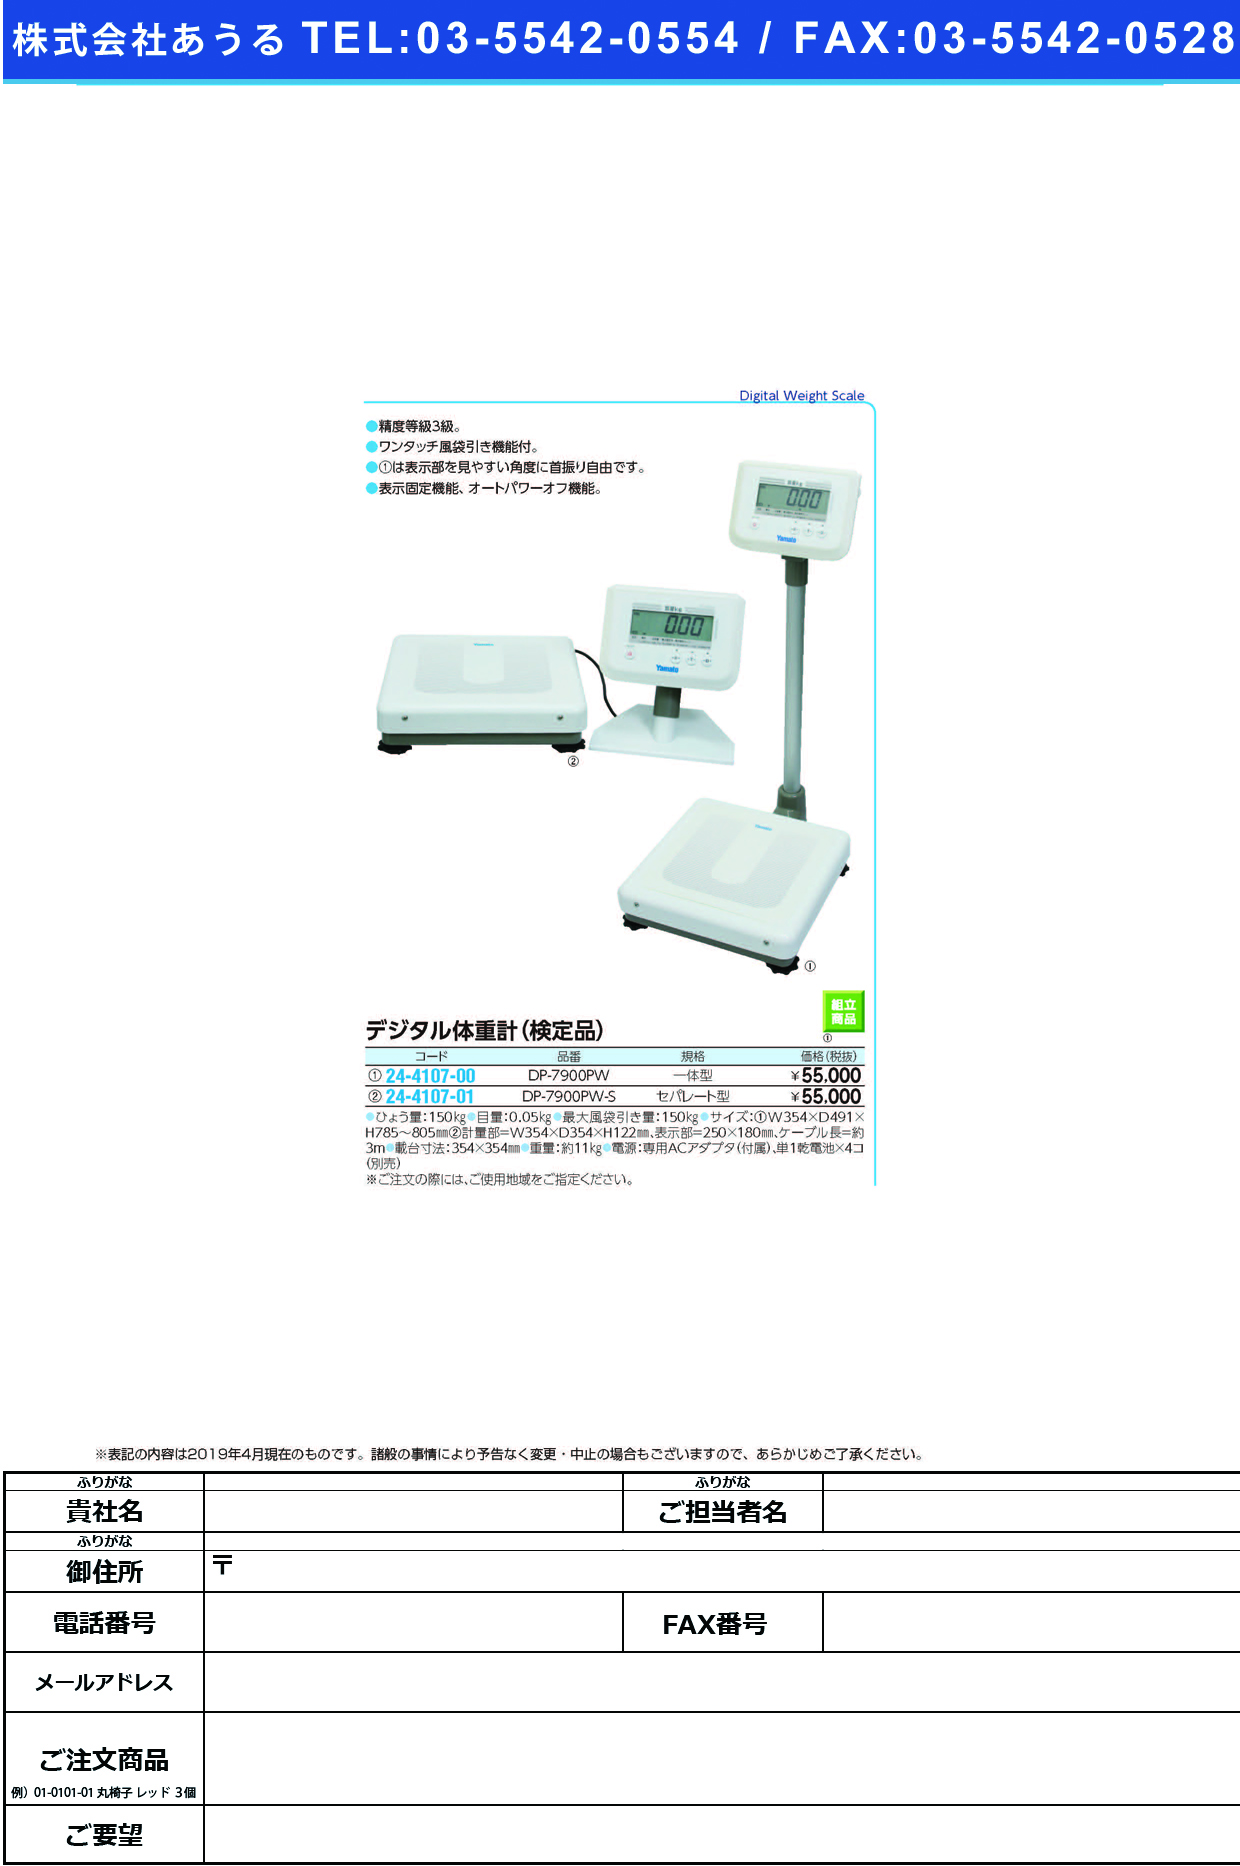 (24-4107-00)ヤマトデジタル体重計（検定付） DP-7900PW(ｲｯﾀｲｶﾞﾀ) ﾔﾏﾄﾃﾞｼﾞﾀﾙﾀｲｼﾞｭｳｹｲ【1台単位】【2019年カタログ商品】